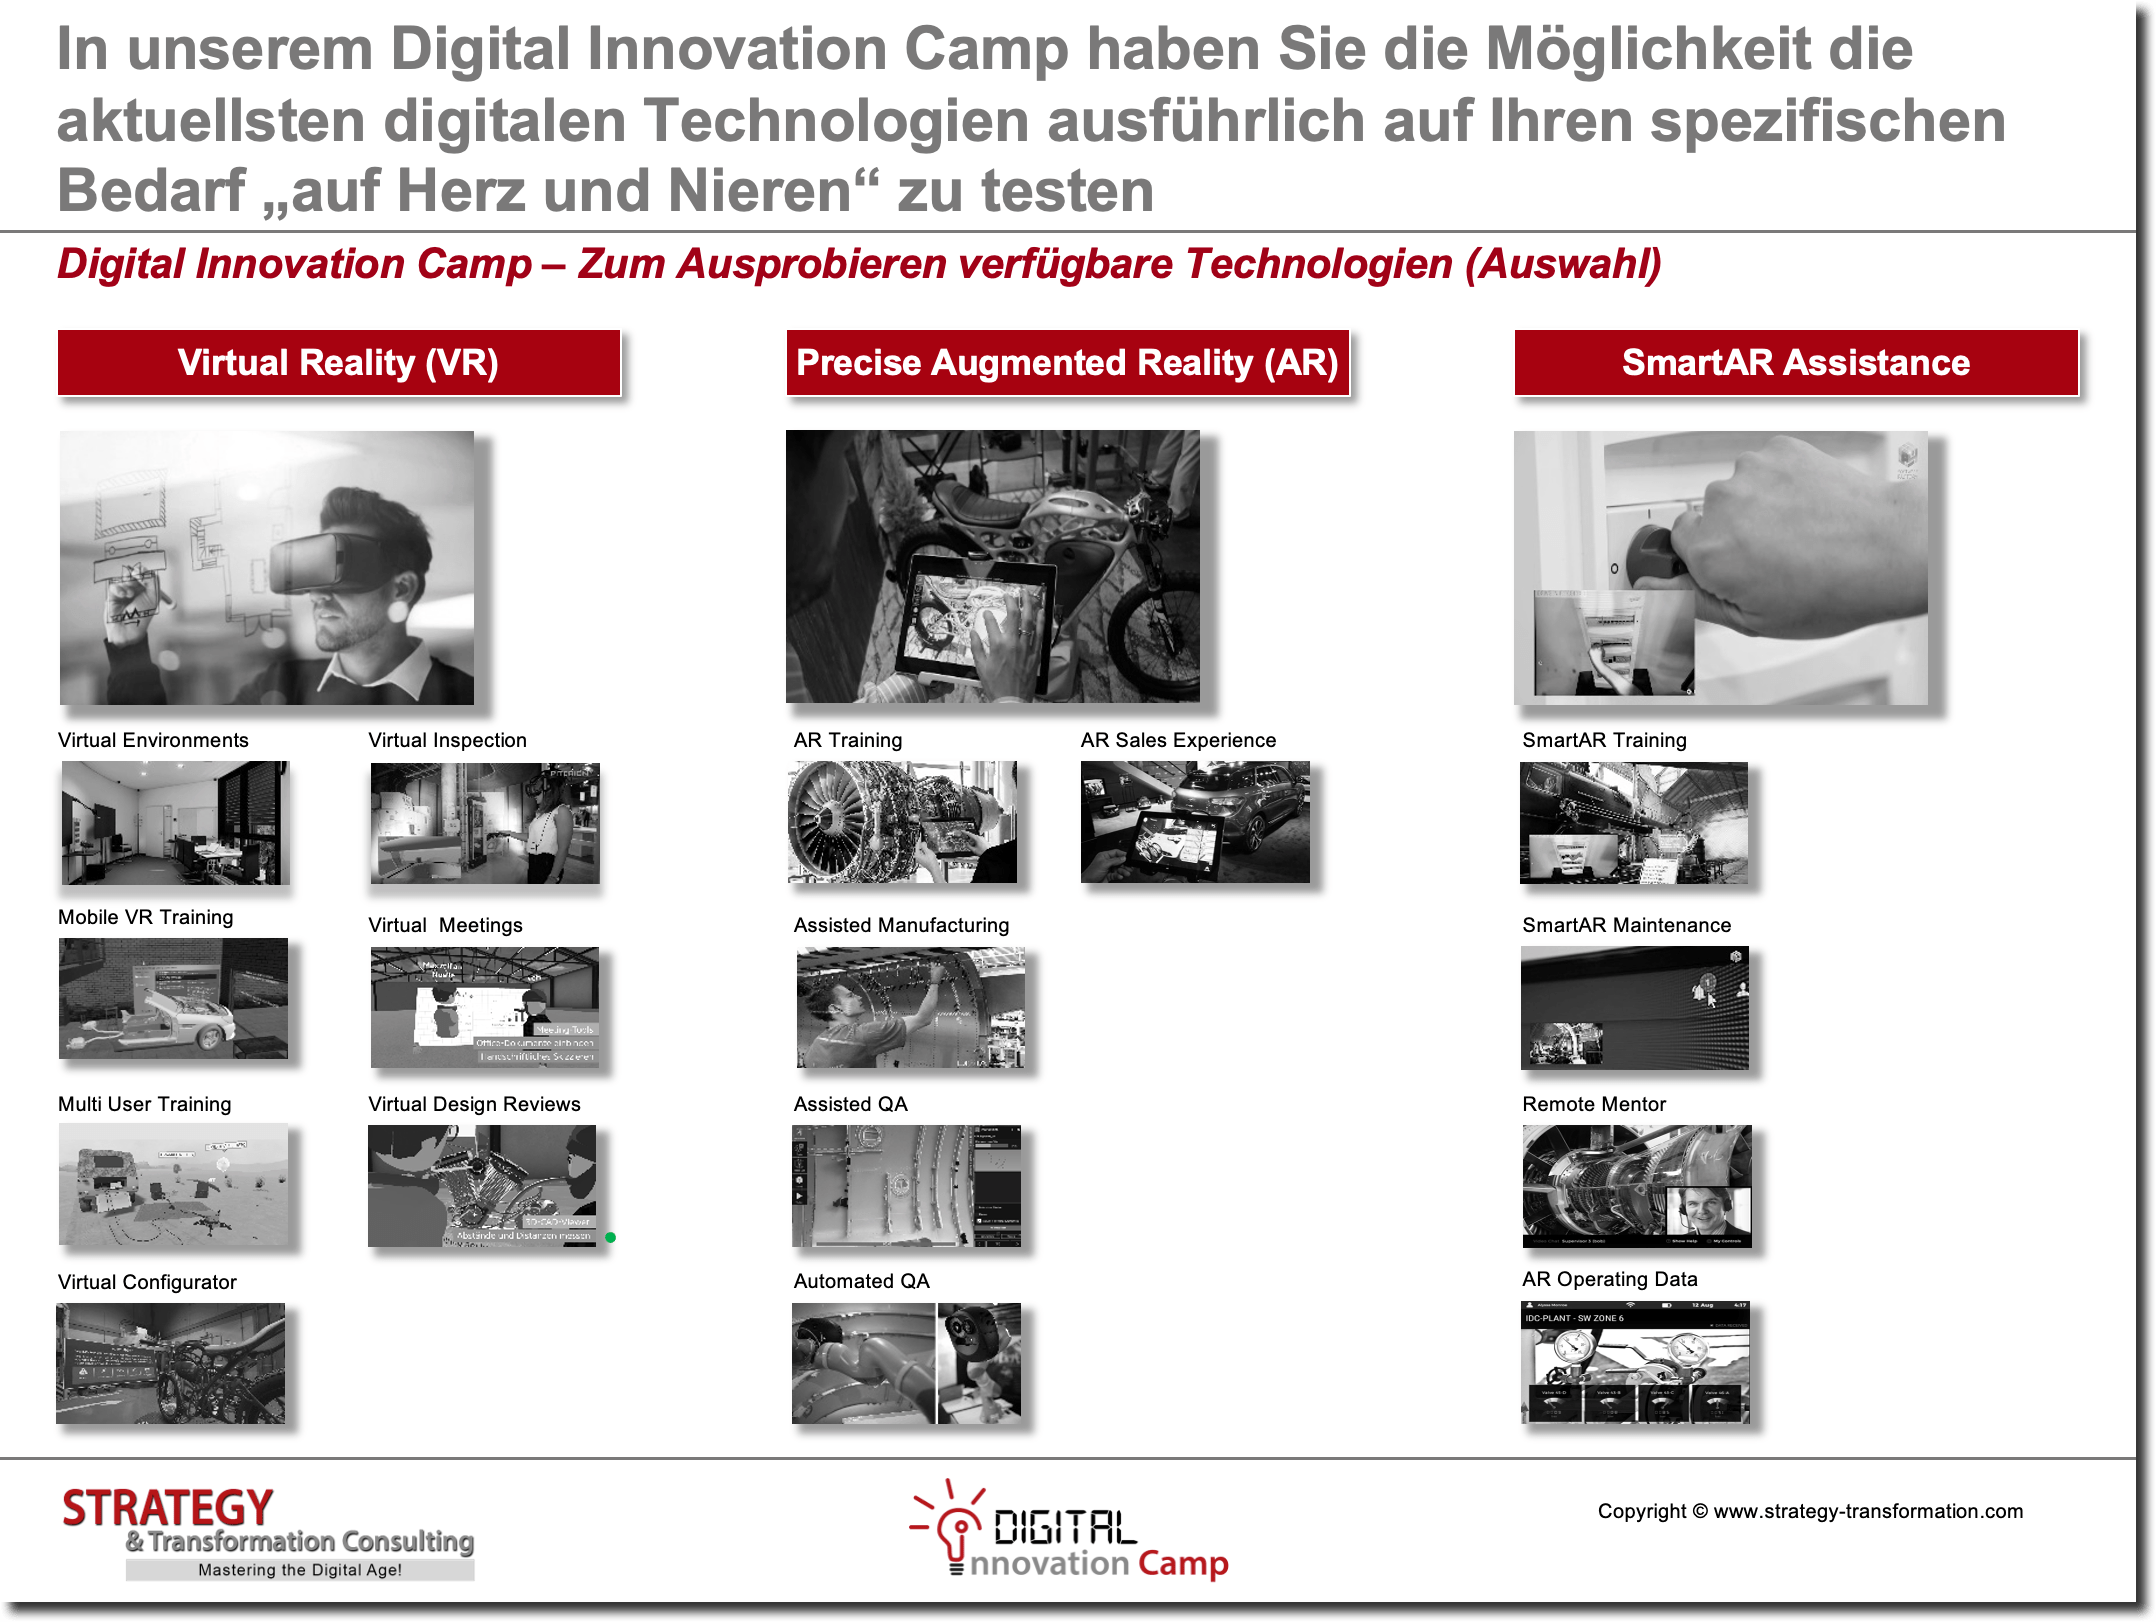 Digital Innovation Camp – Zum Ausprobieren verfügbare Technologien (Auswahl) 